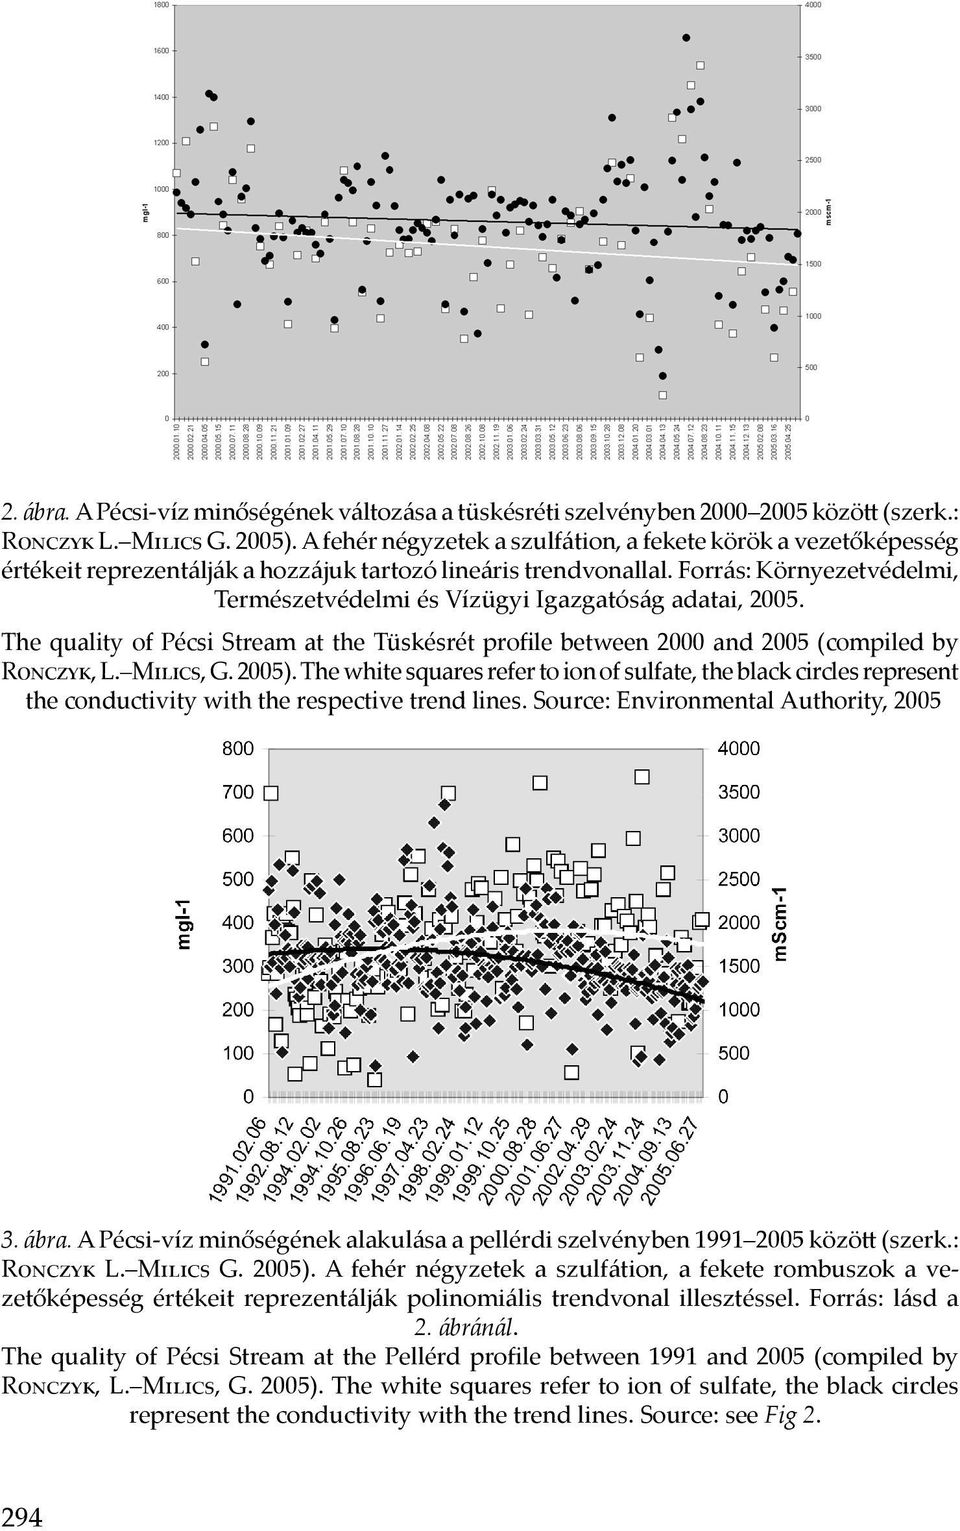 Forrás: Környezetvédelmi, Természetvédelmi és Vízügyi Igazgatóság adatai, 2005. The quality of Pécsi Stream at the Tüskésrét profile between 2000 and 2005 (compiled by Ronczyk, L. Milics, G. 2005).